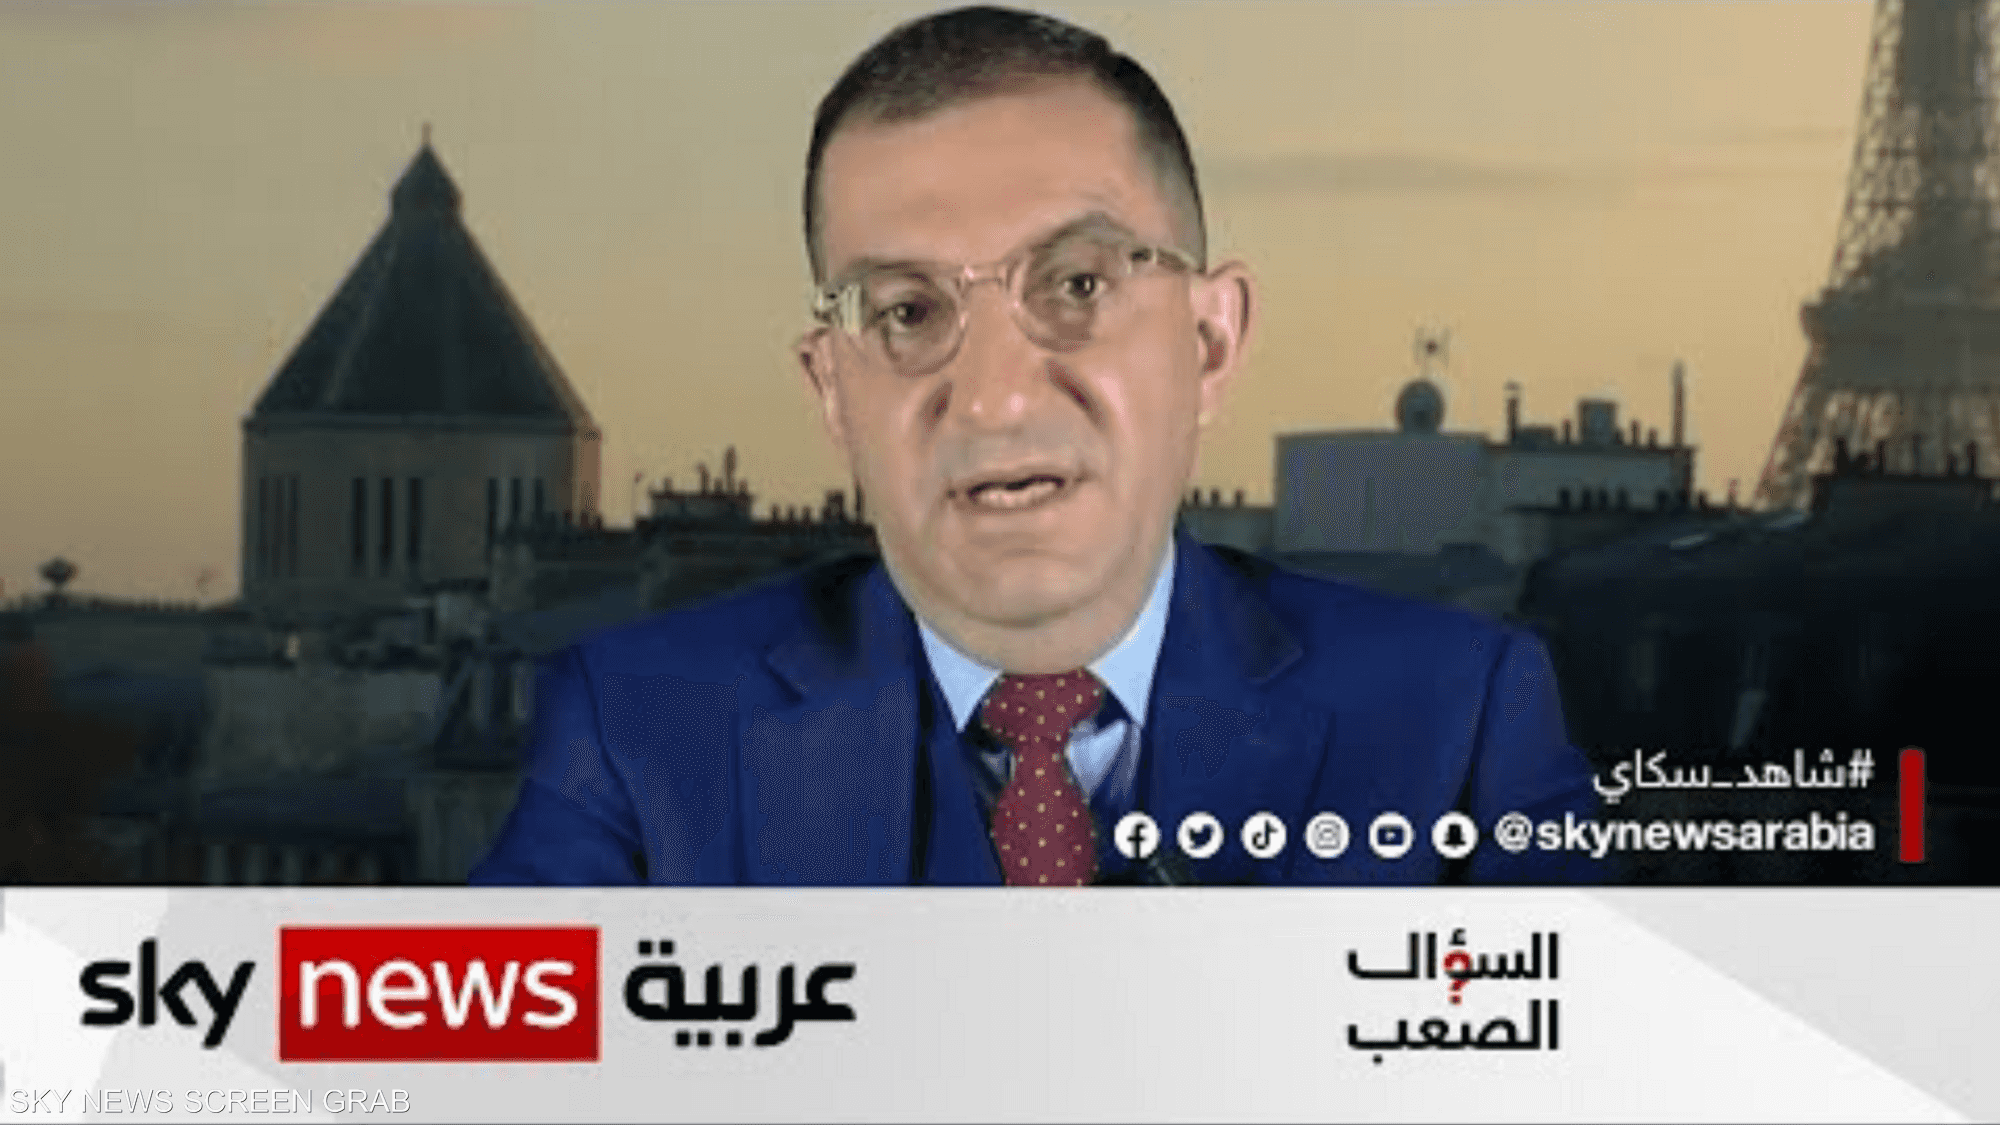 فرنسي من أصول مصرية: سأوقف الهجرة، لو أصبحت وزيرا للداخلية